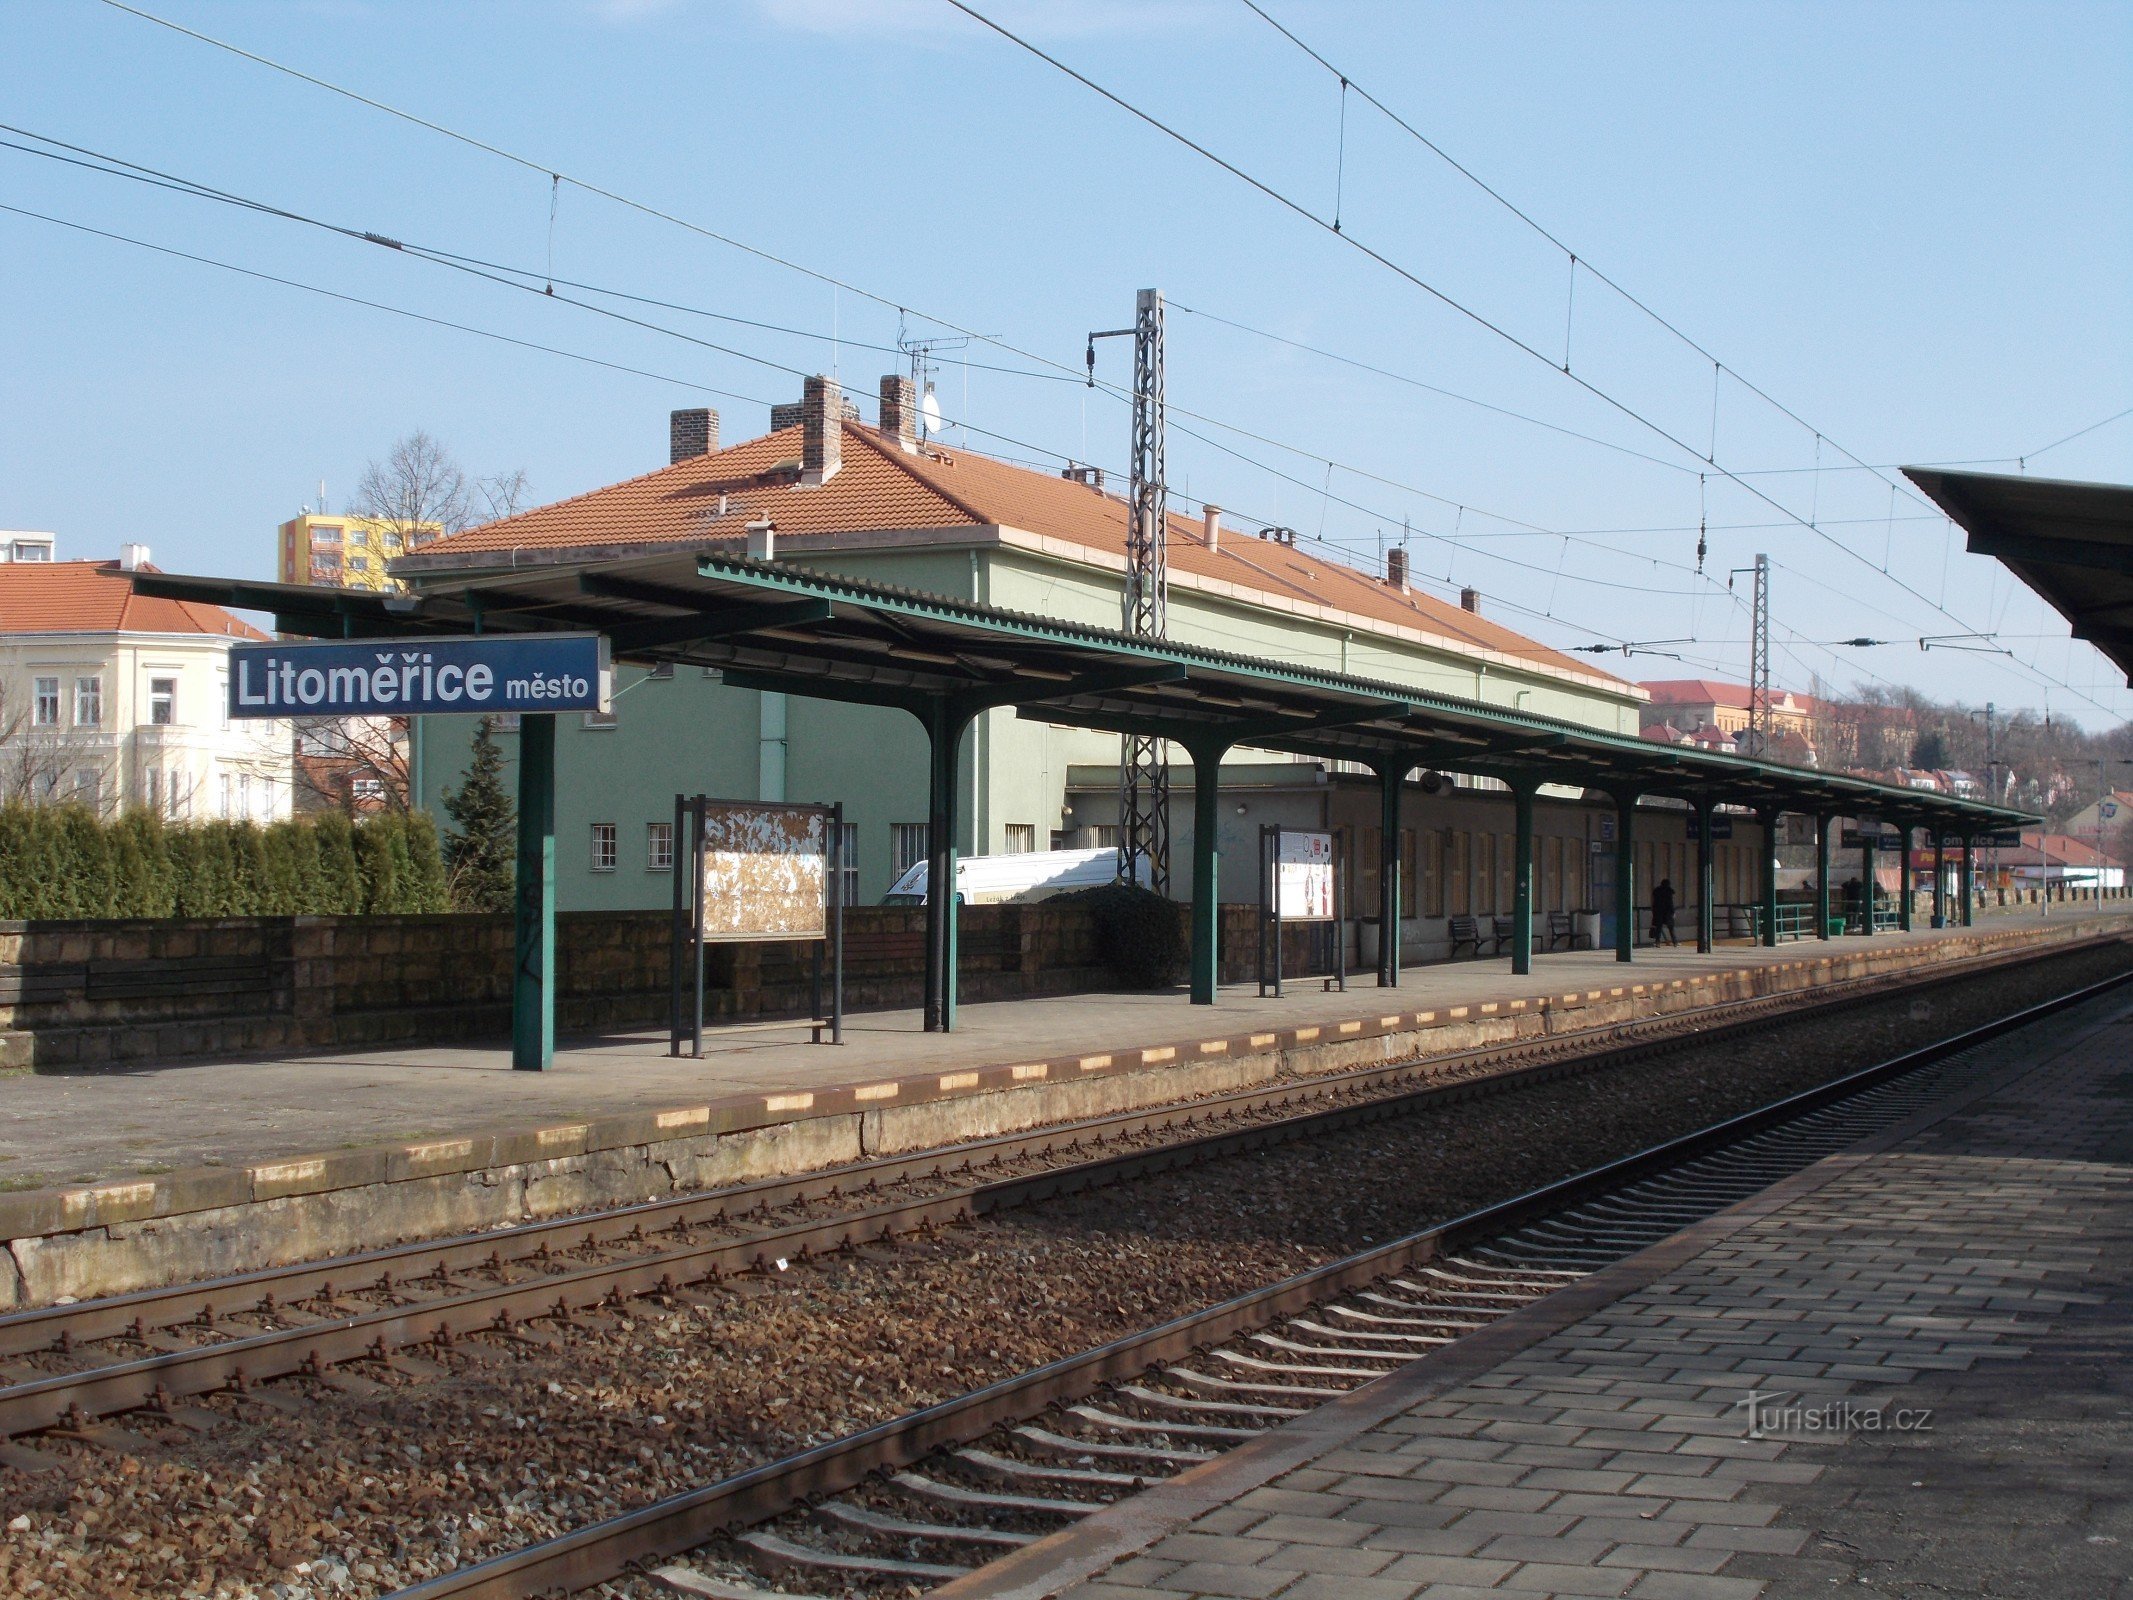 Thị trấn Litoměřice - ga đường sắt